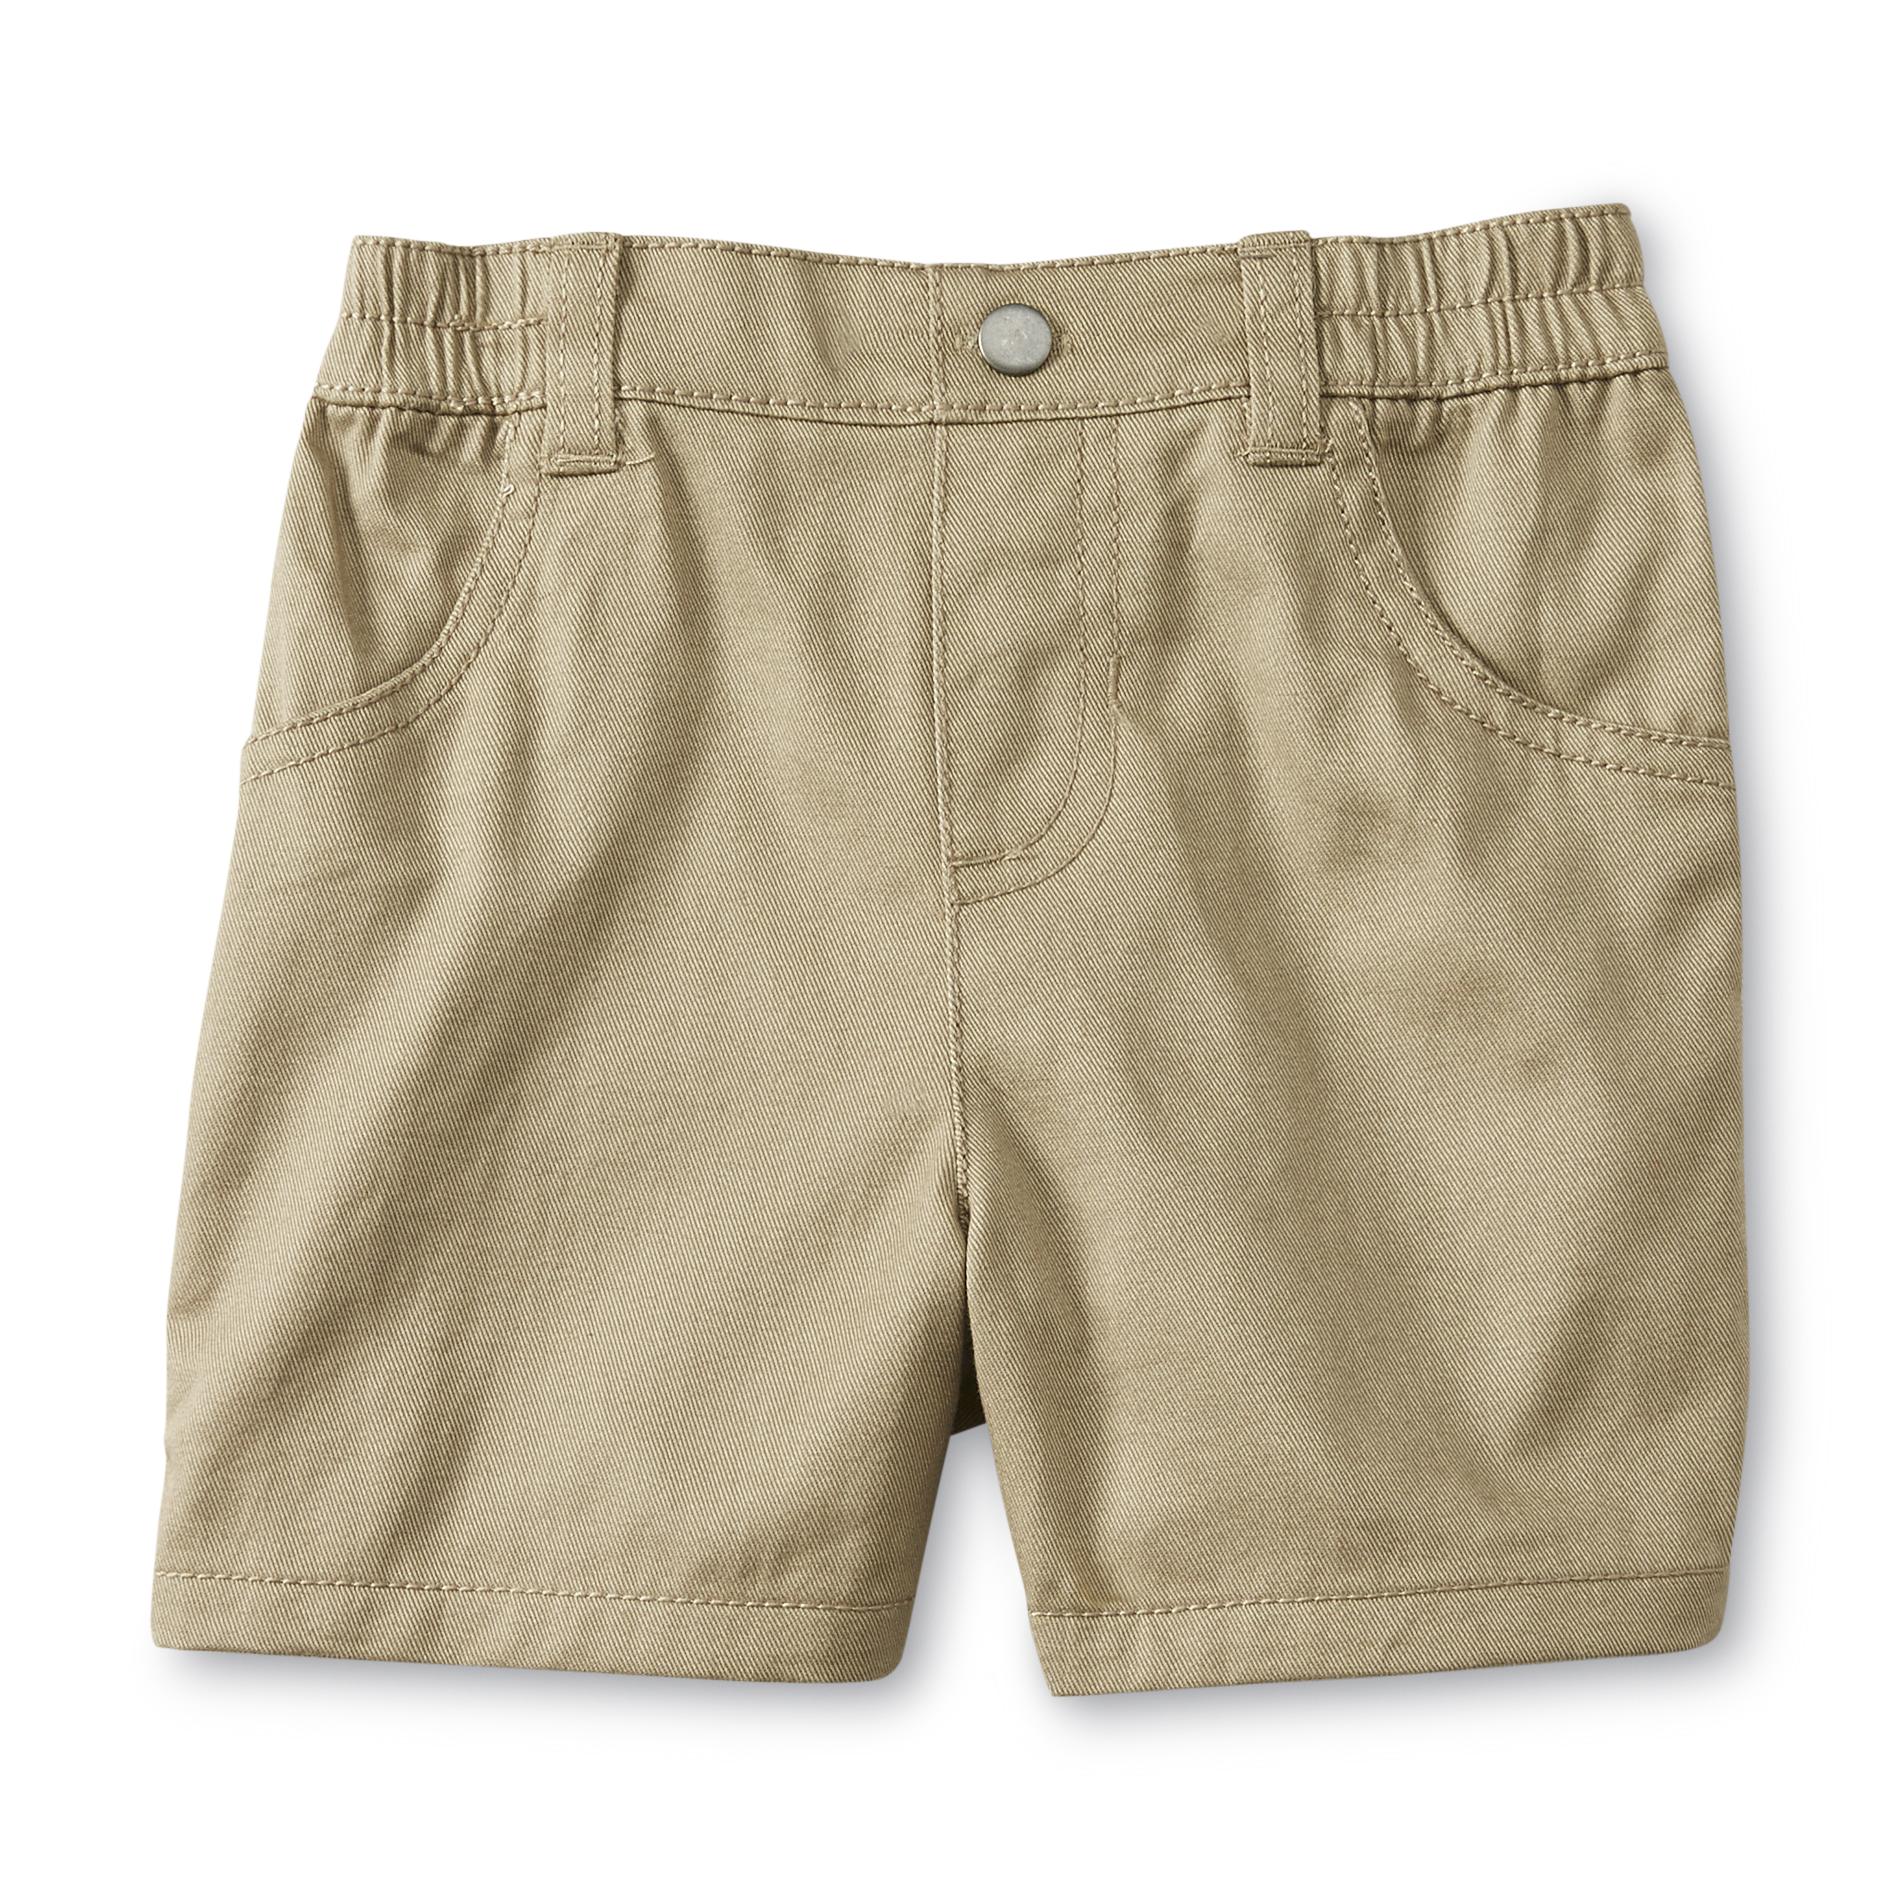 Small Wonders Newborn Boy's Twill Shorts